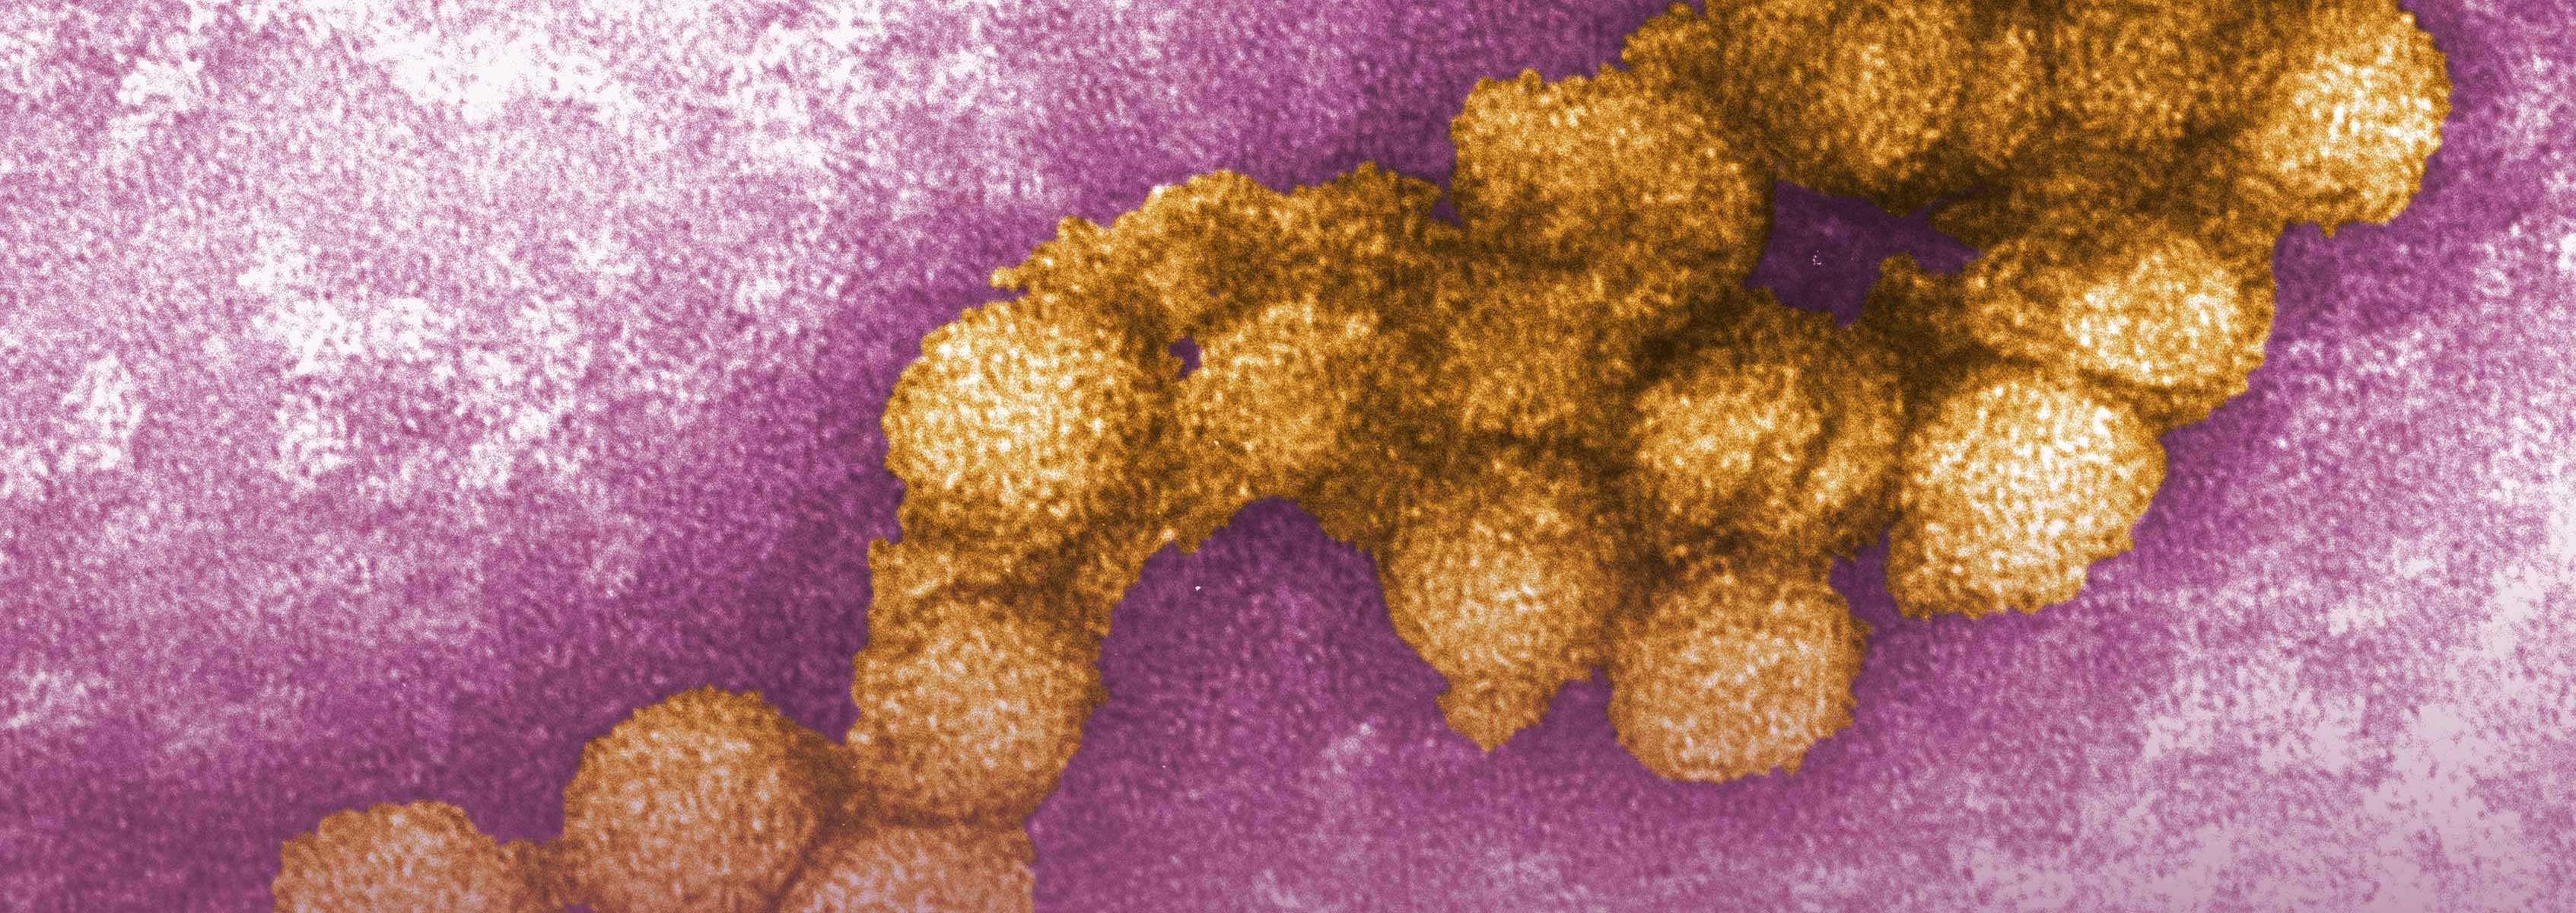 Genomics of West Nile Virus J. Craig Venter Institute